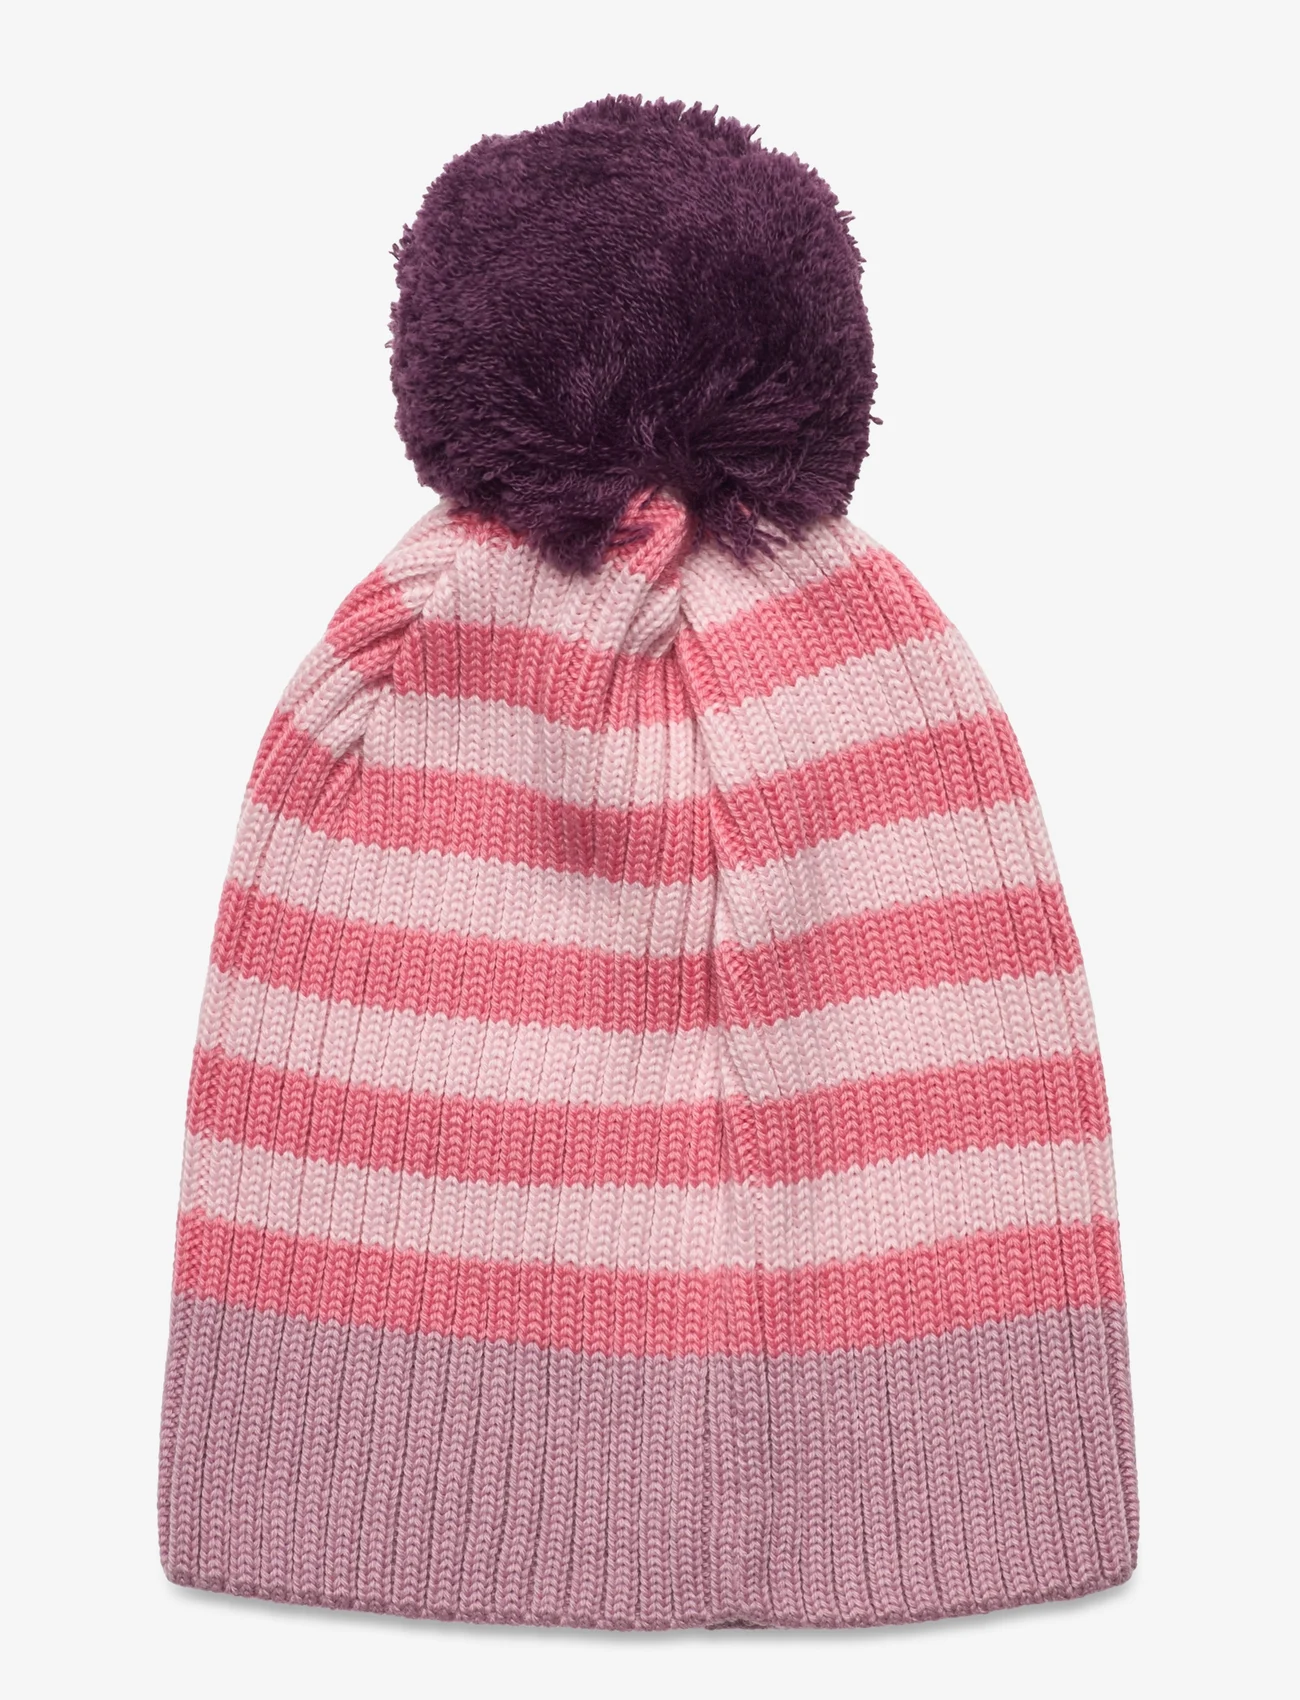 Reima - Beanie, Tipla - winter hats - grey pink - 1